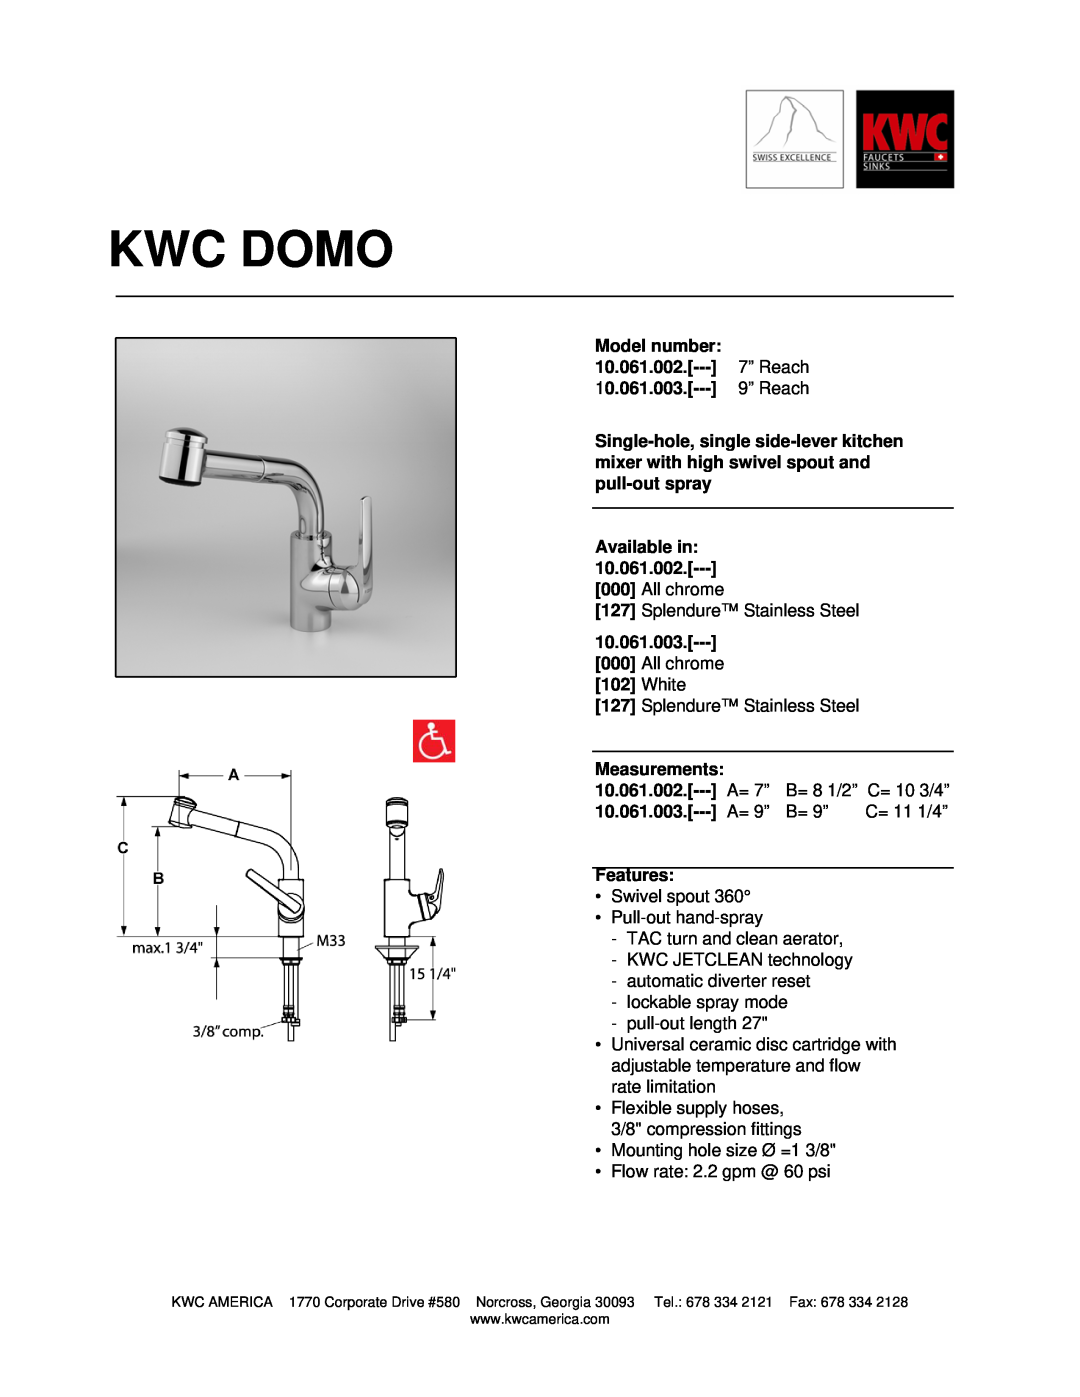 KWC 10.061.003, 10.061.002 manual Kwc Domo 